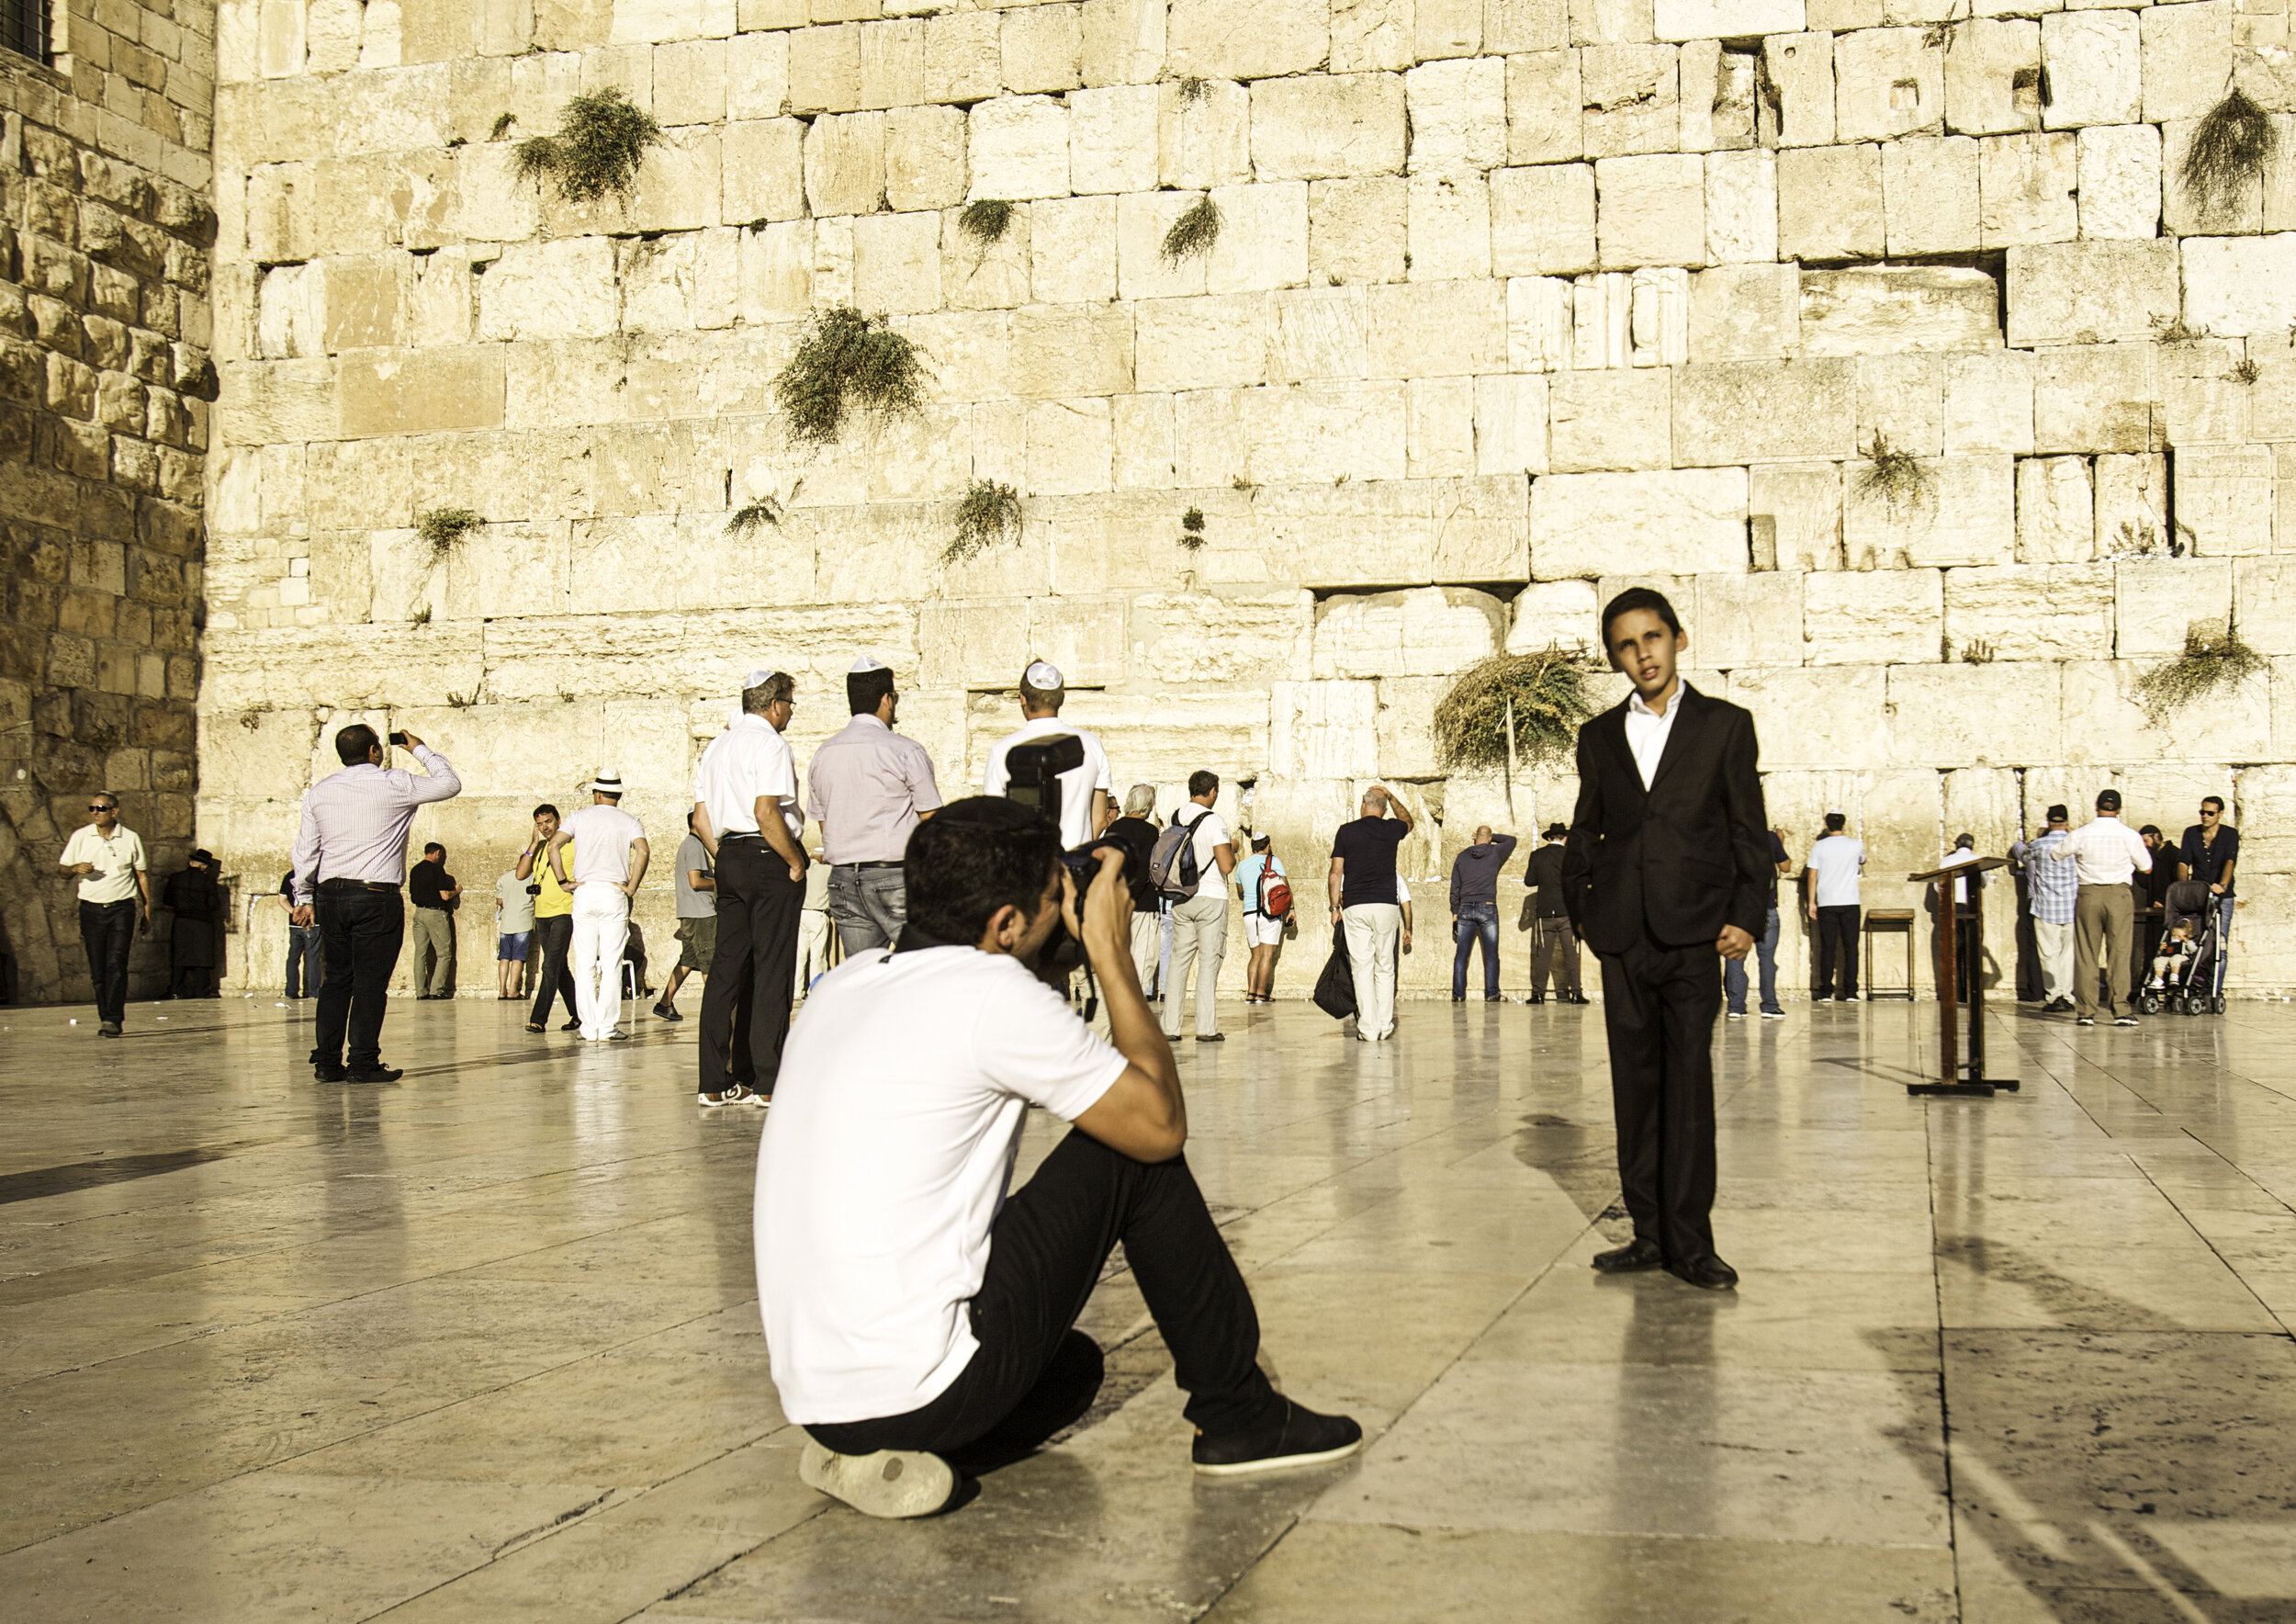 Western Wall, Jerusalem - Israel / 2013